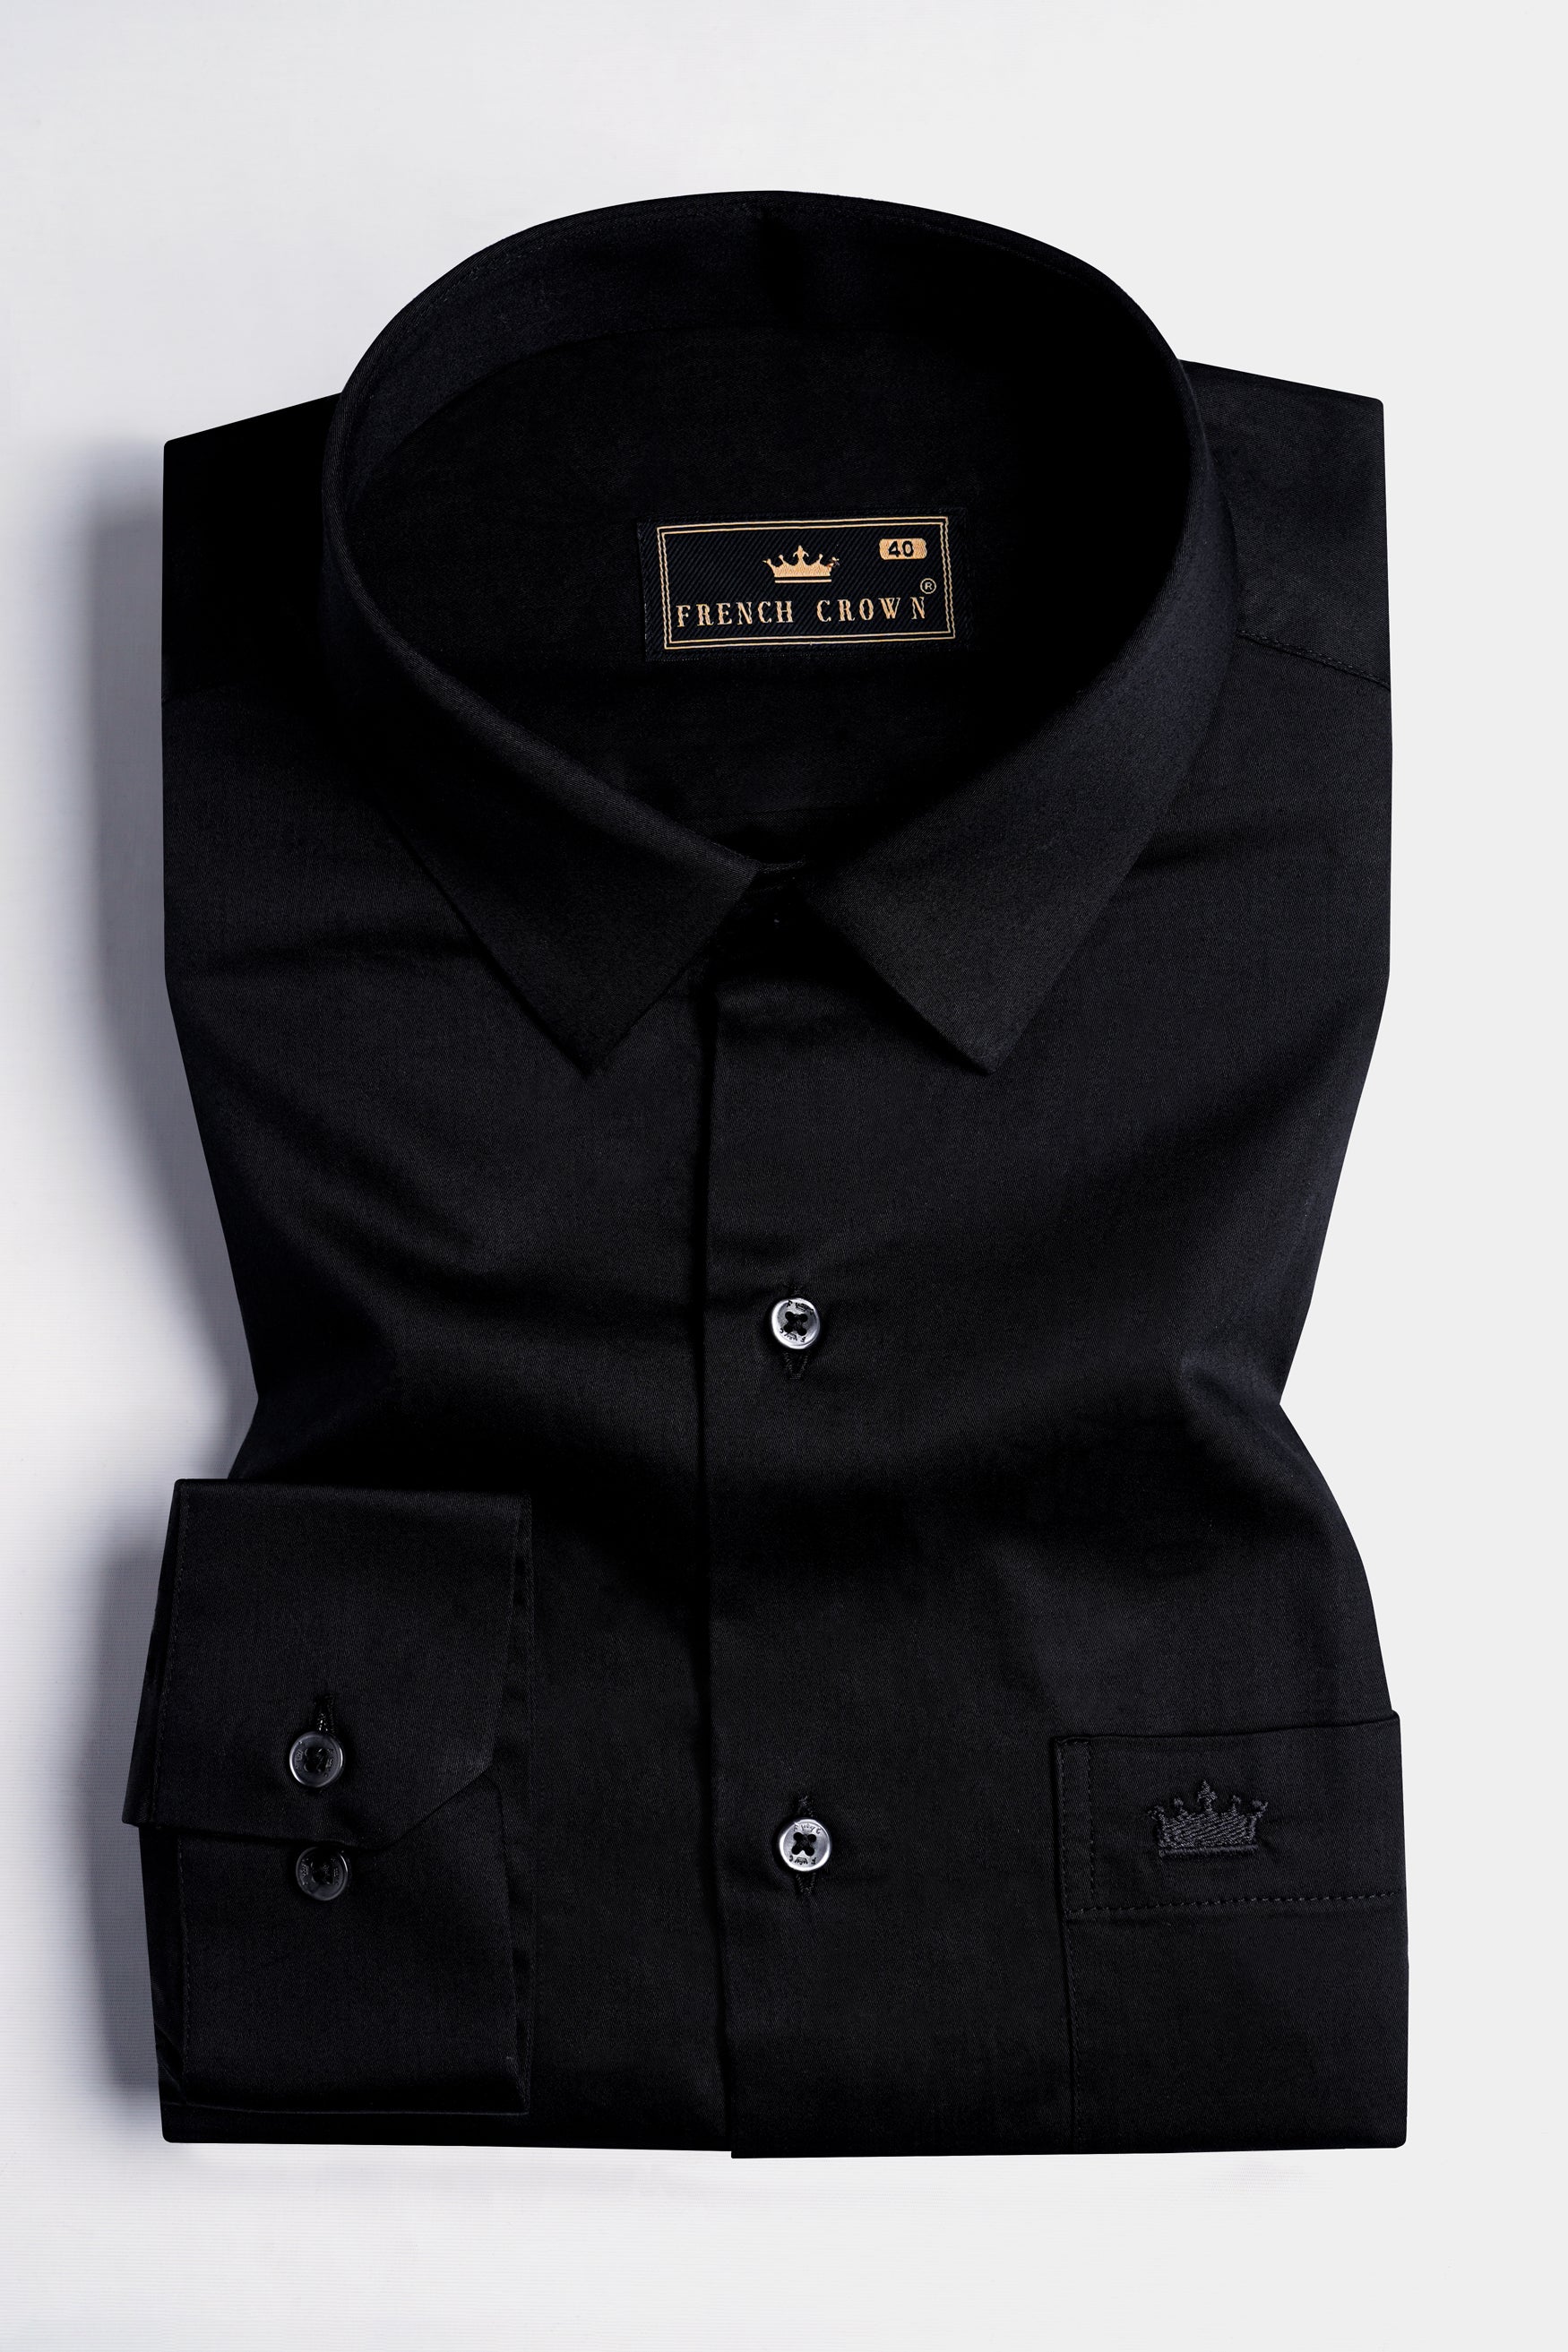 Jade Black leather elbow patch  Super Soft Premium Cotton Shirt